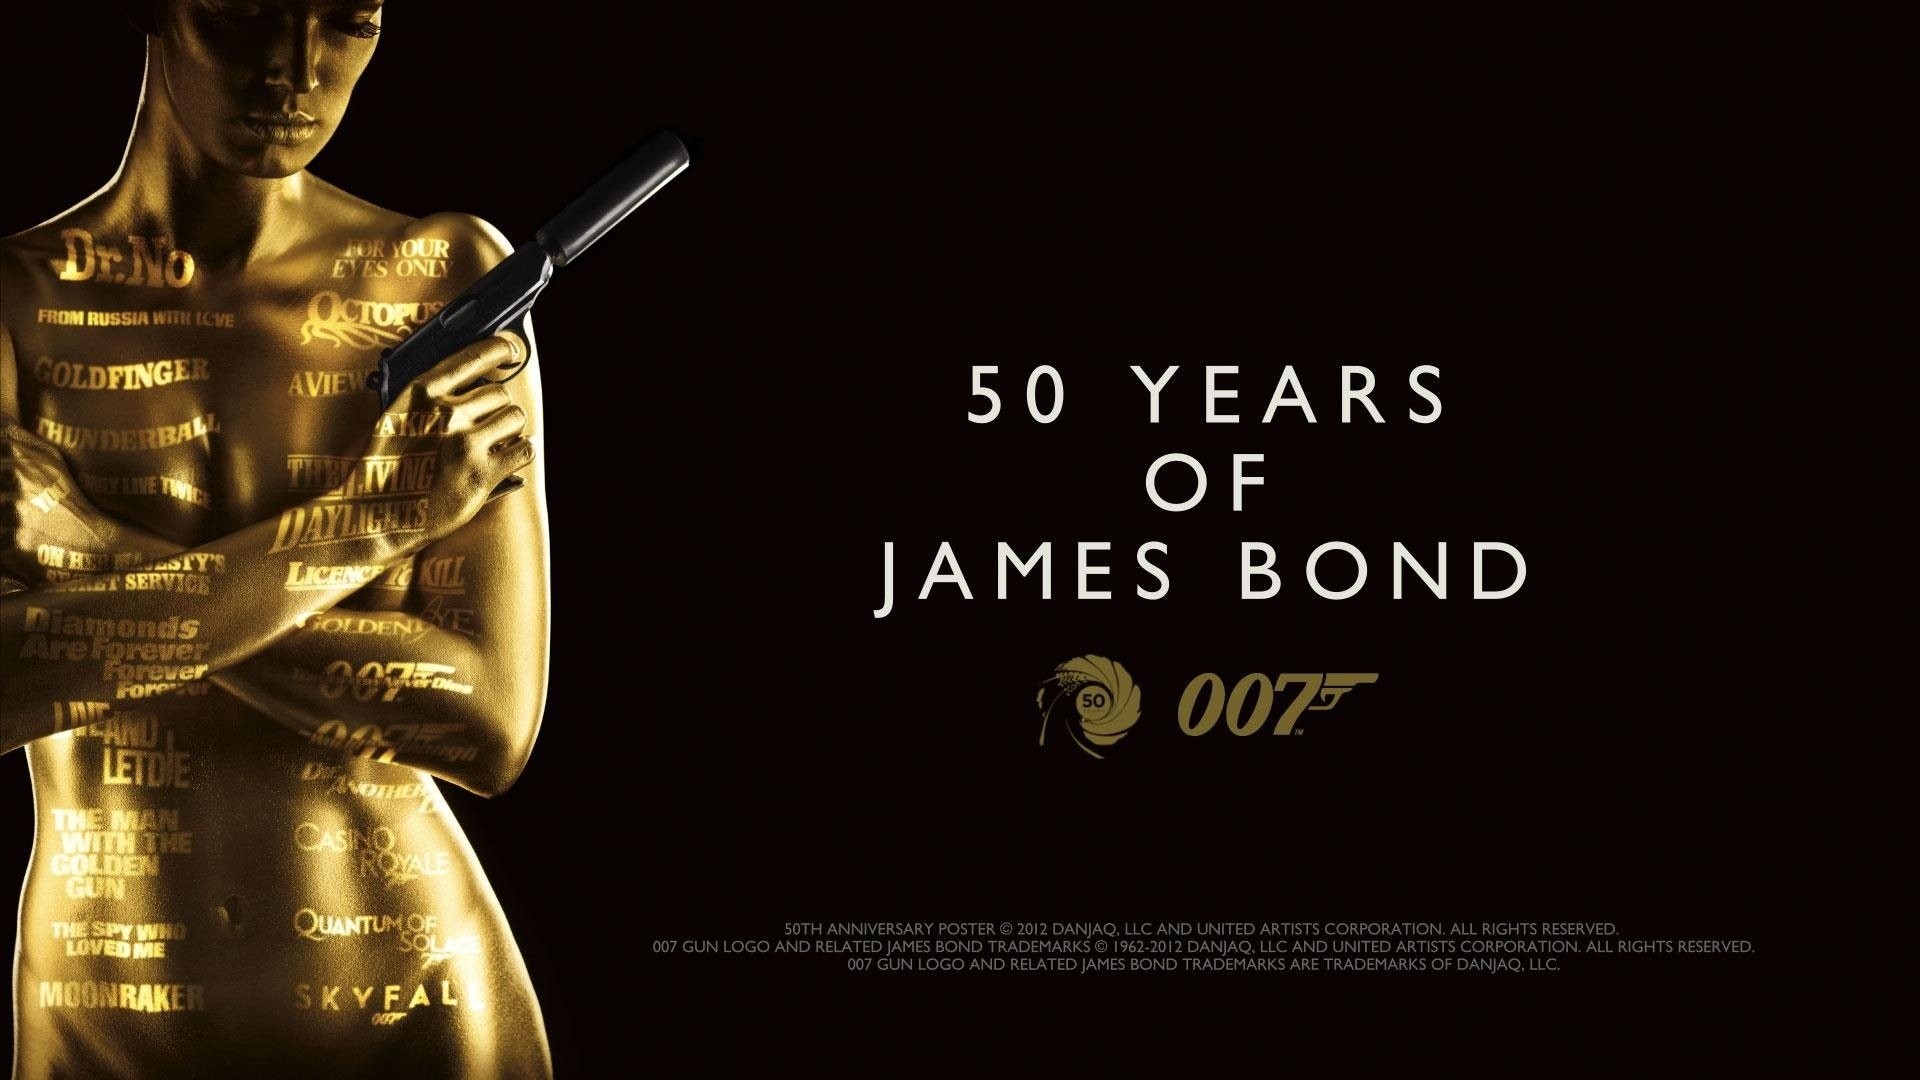 1920x1080 James Bond iPhone Wallpaper | HD Wallpapers | Pinterest | James bond and  Wallpaper